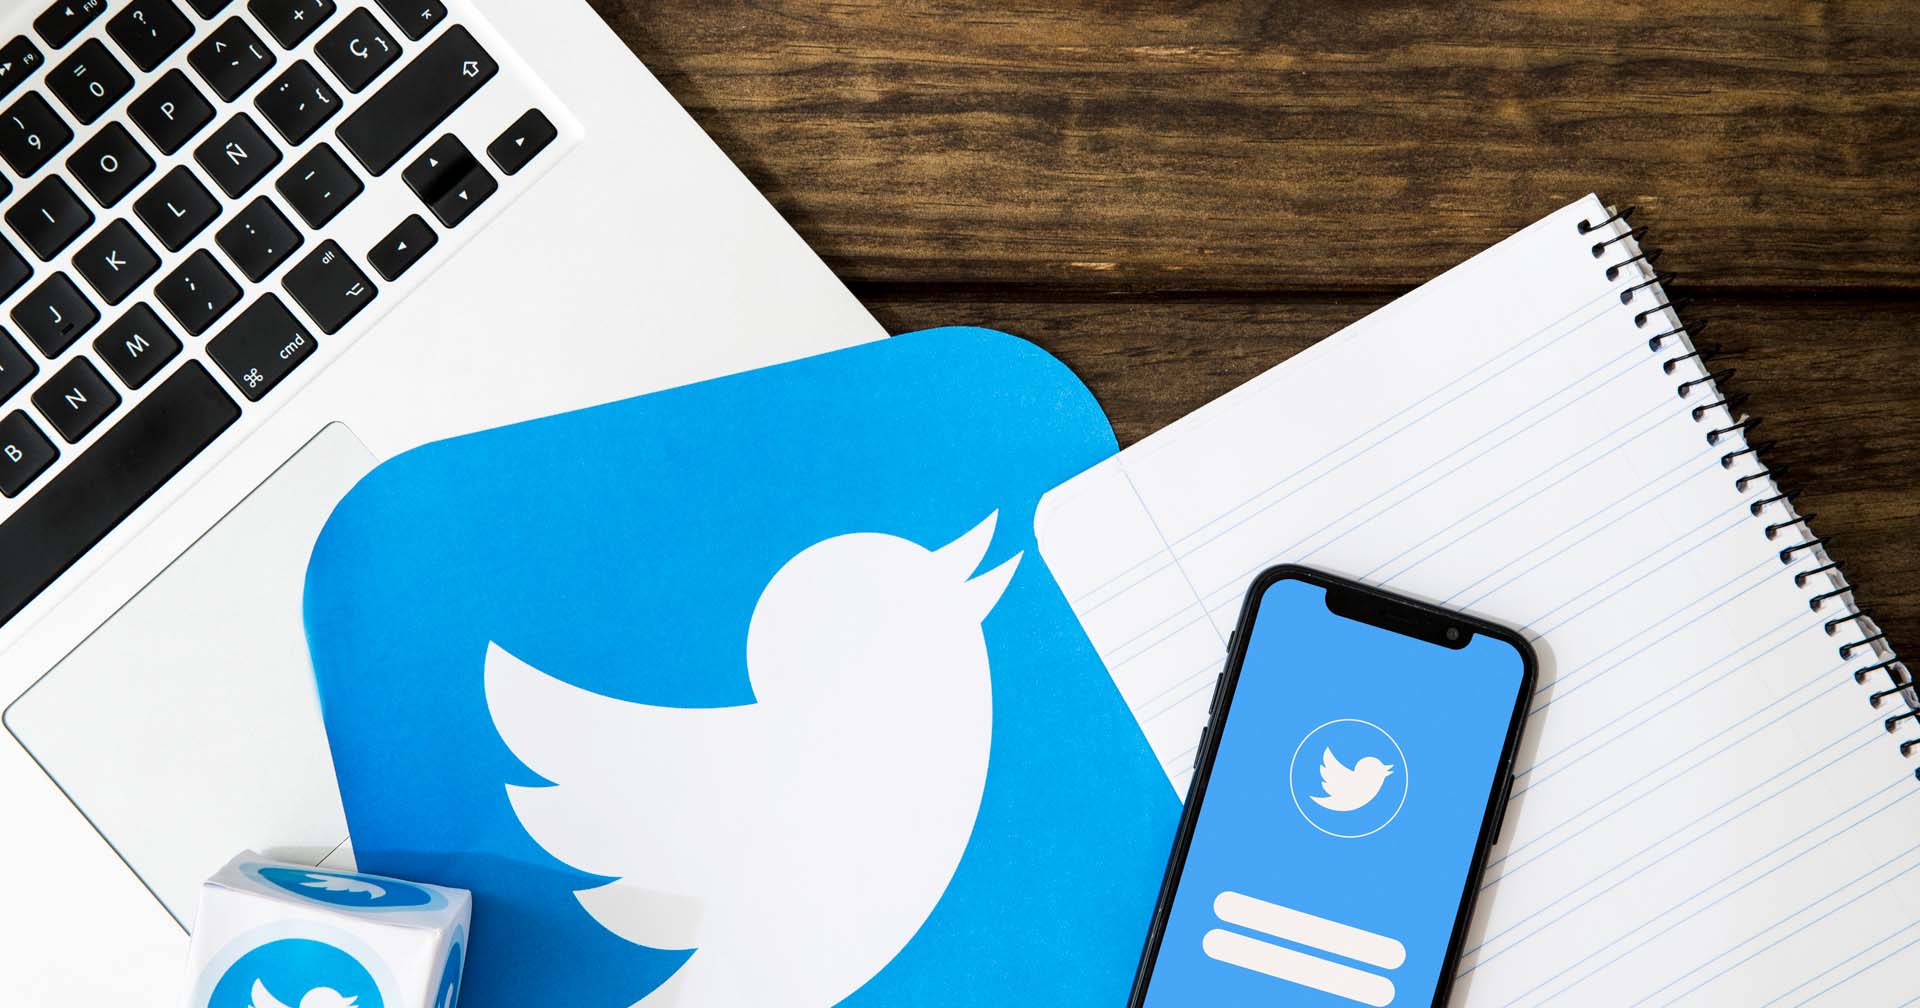 รายงาน : Twitter ปลดพนักงานอย่างน้อย 200 คน หรือ 10% ของพนักงานทั้งหมดในปัจจุบัน